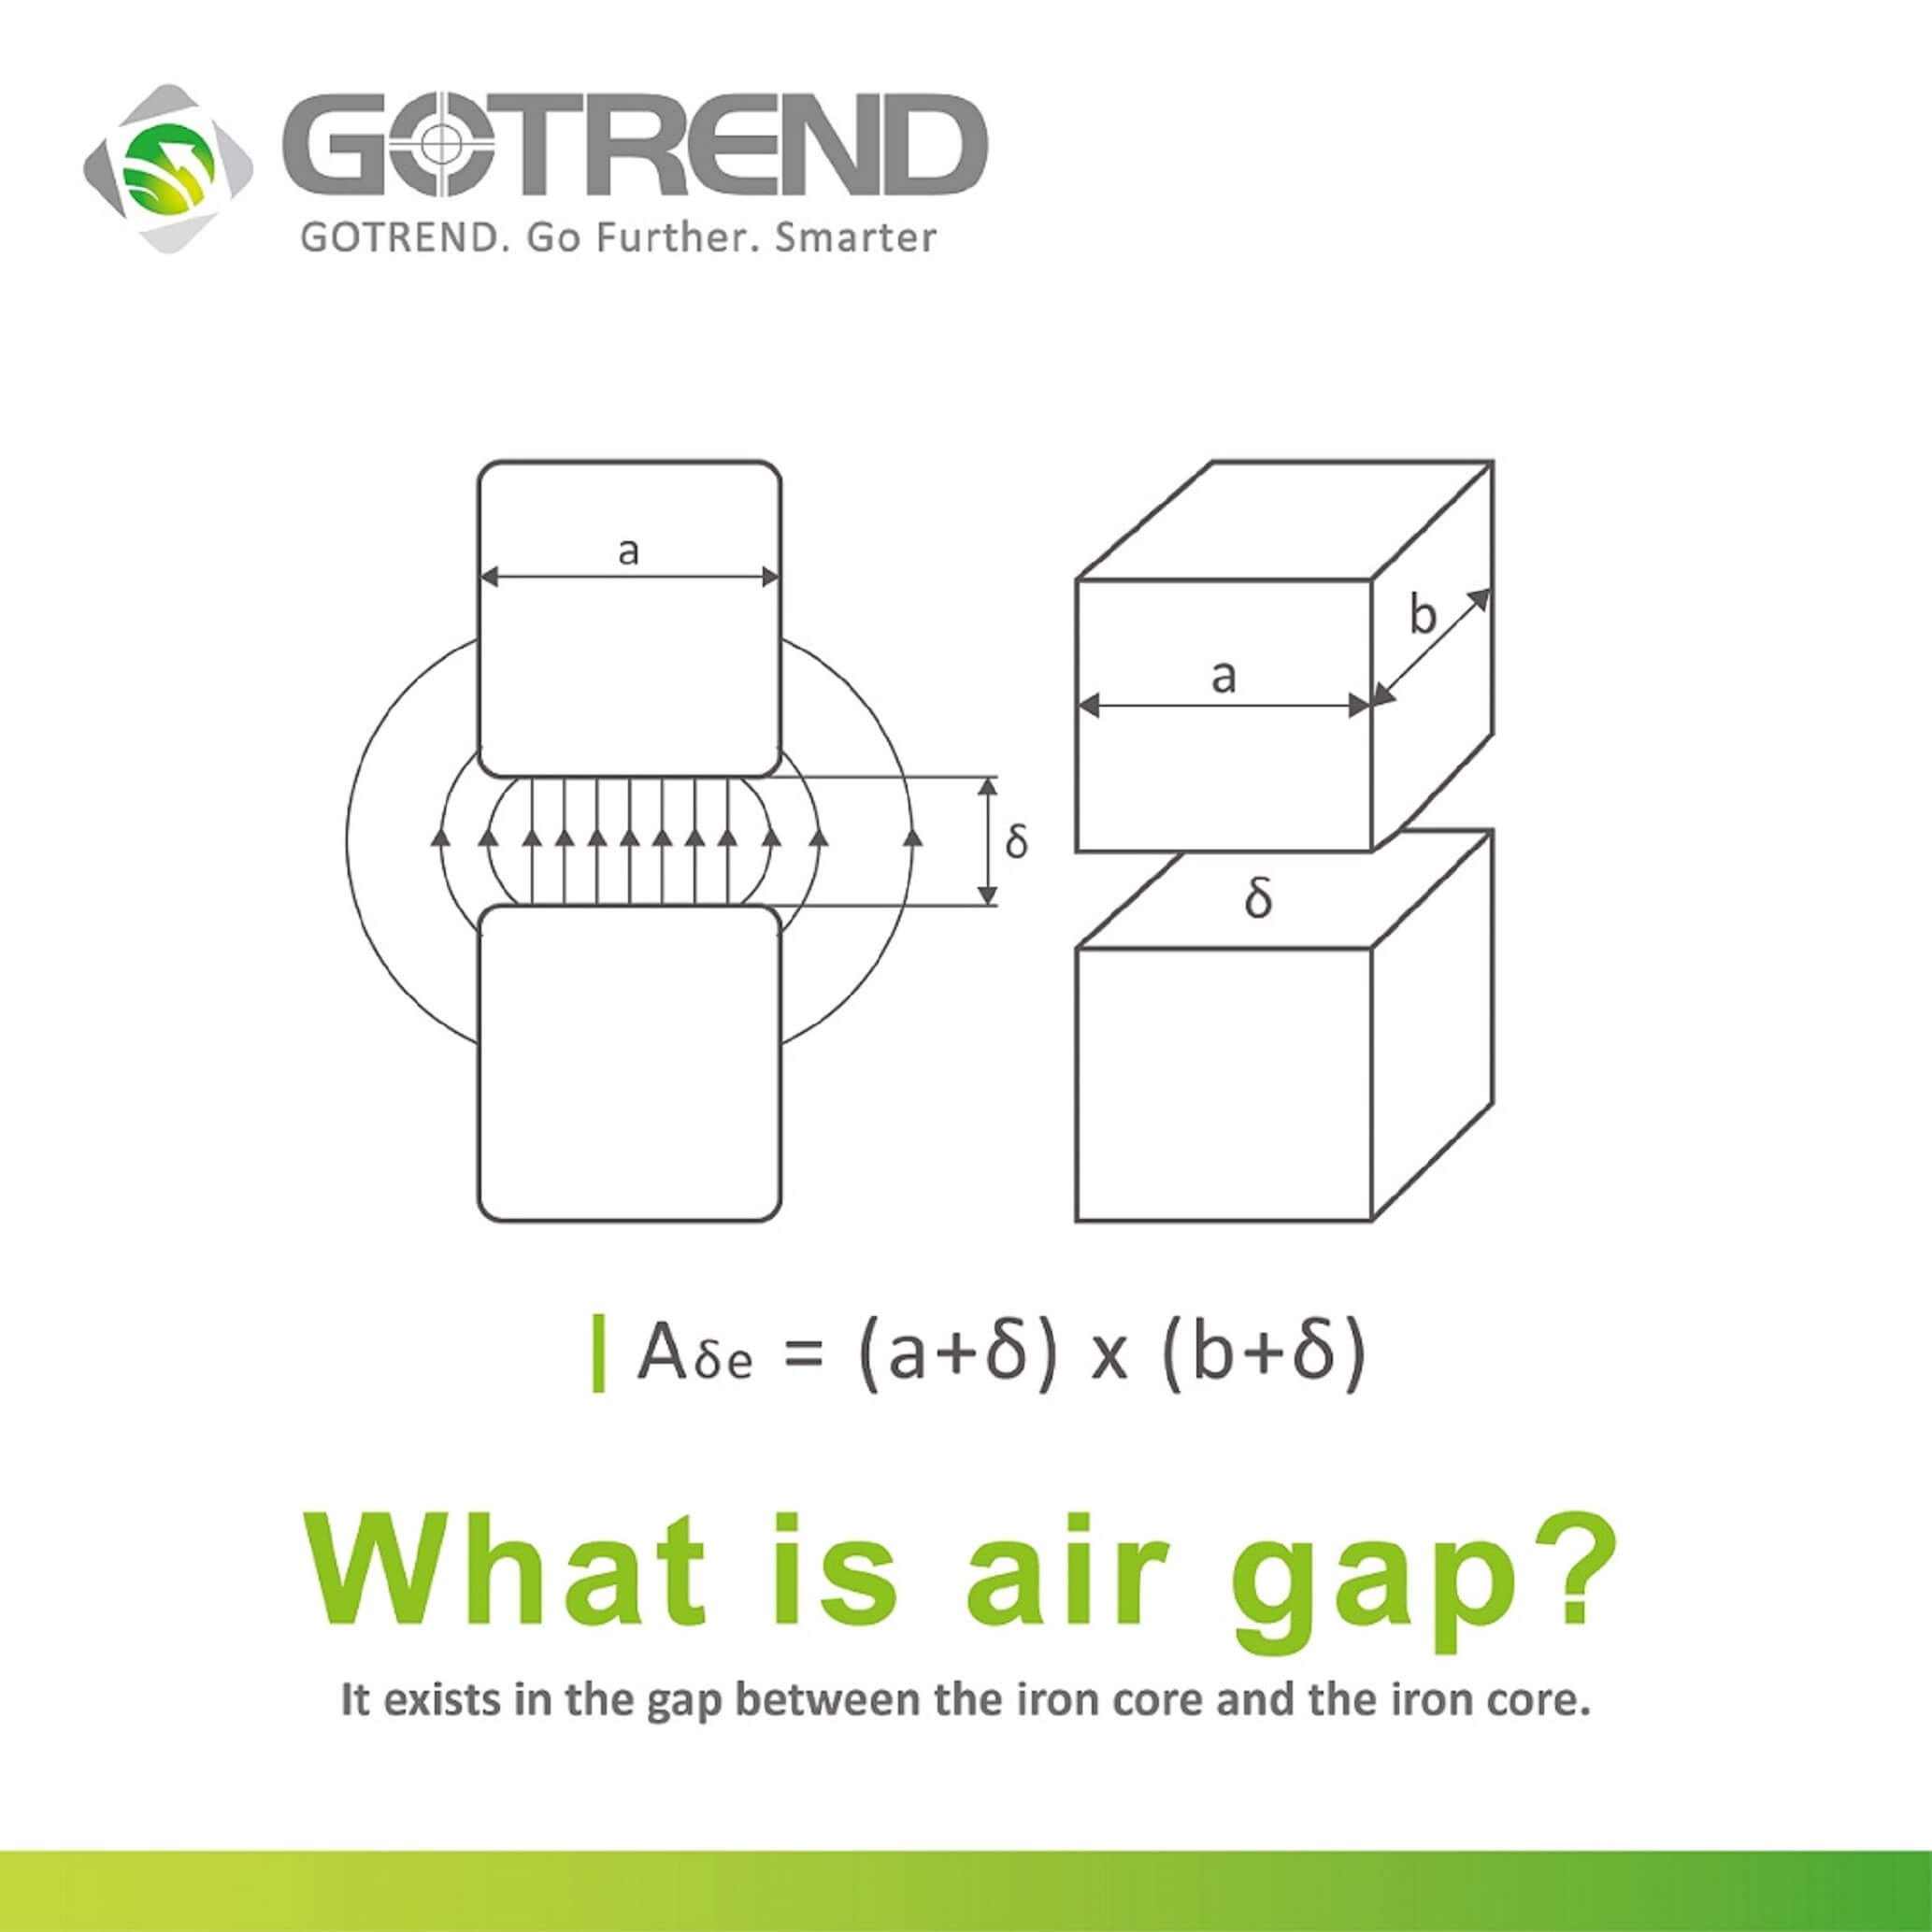 What is an air gap?